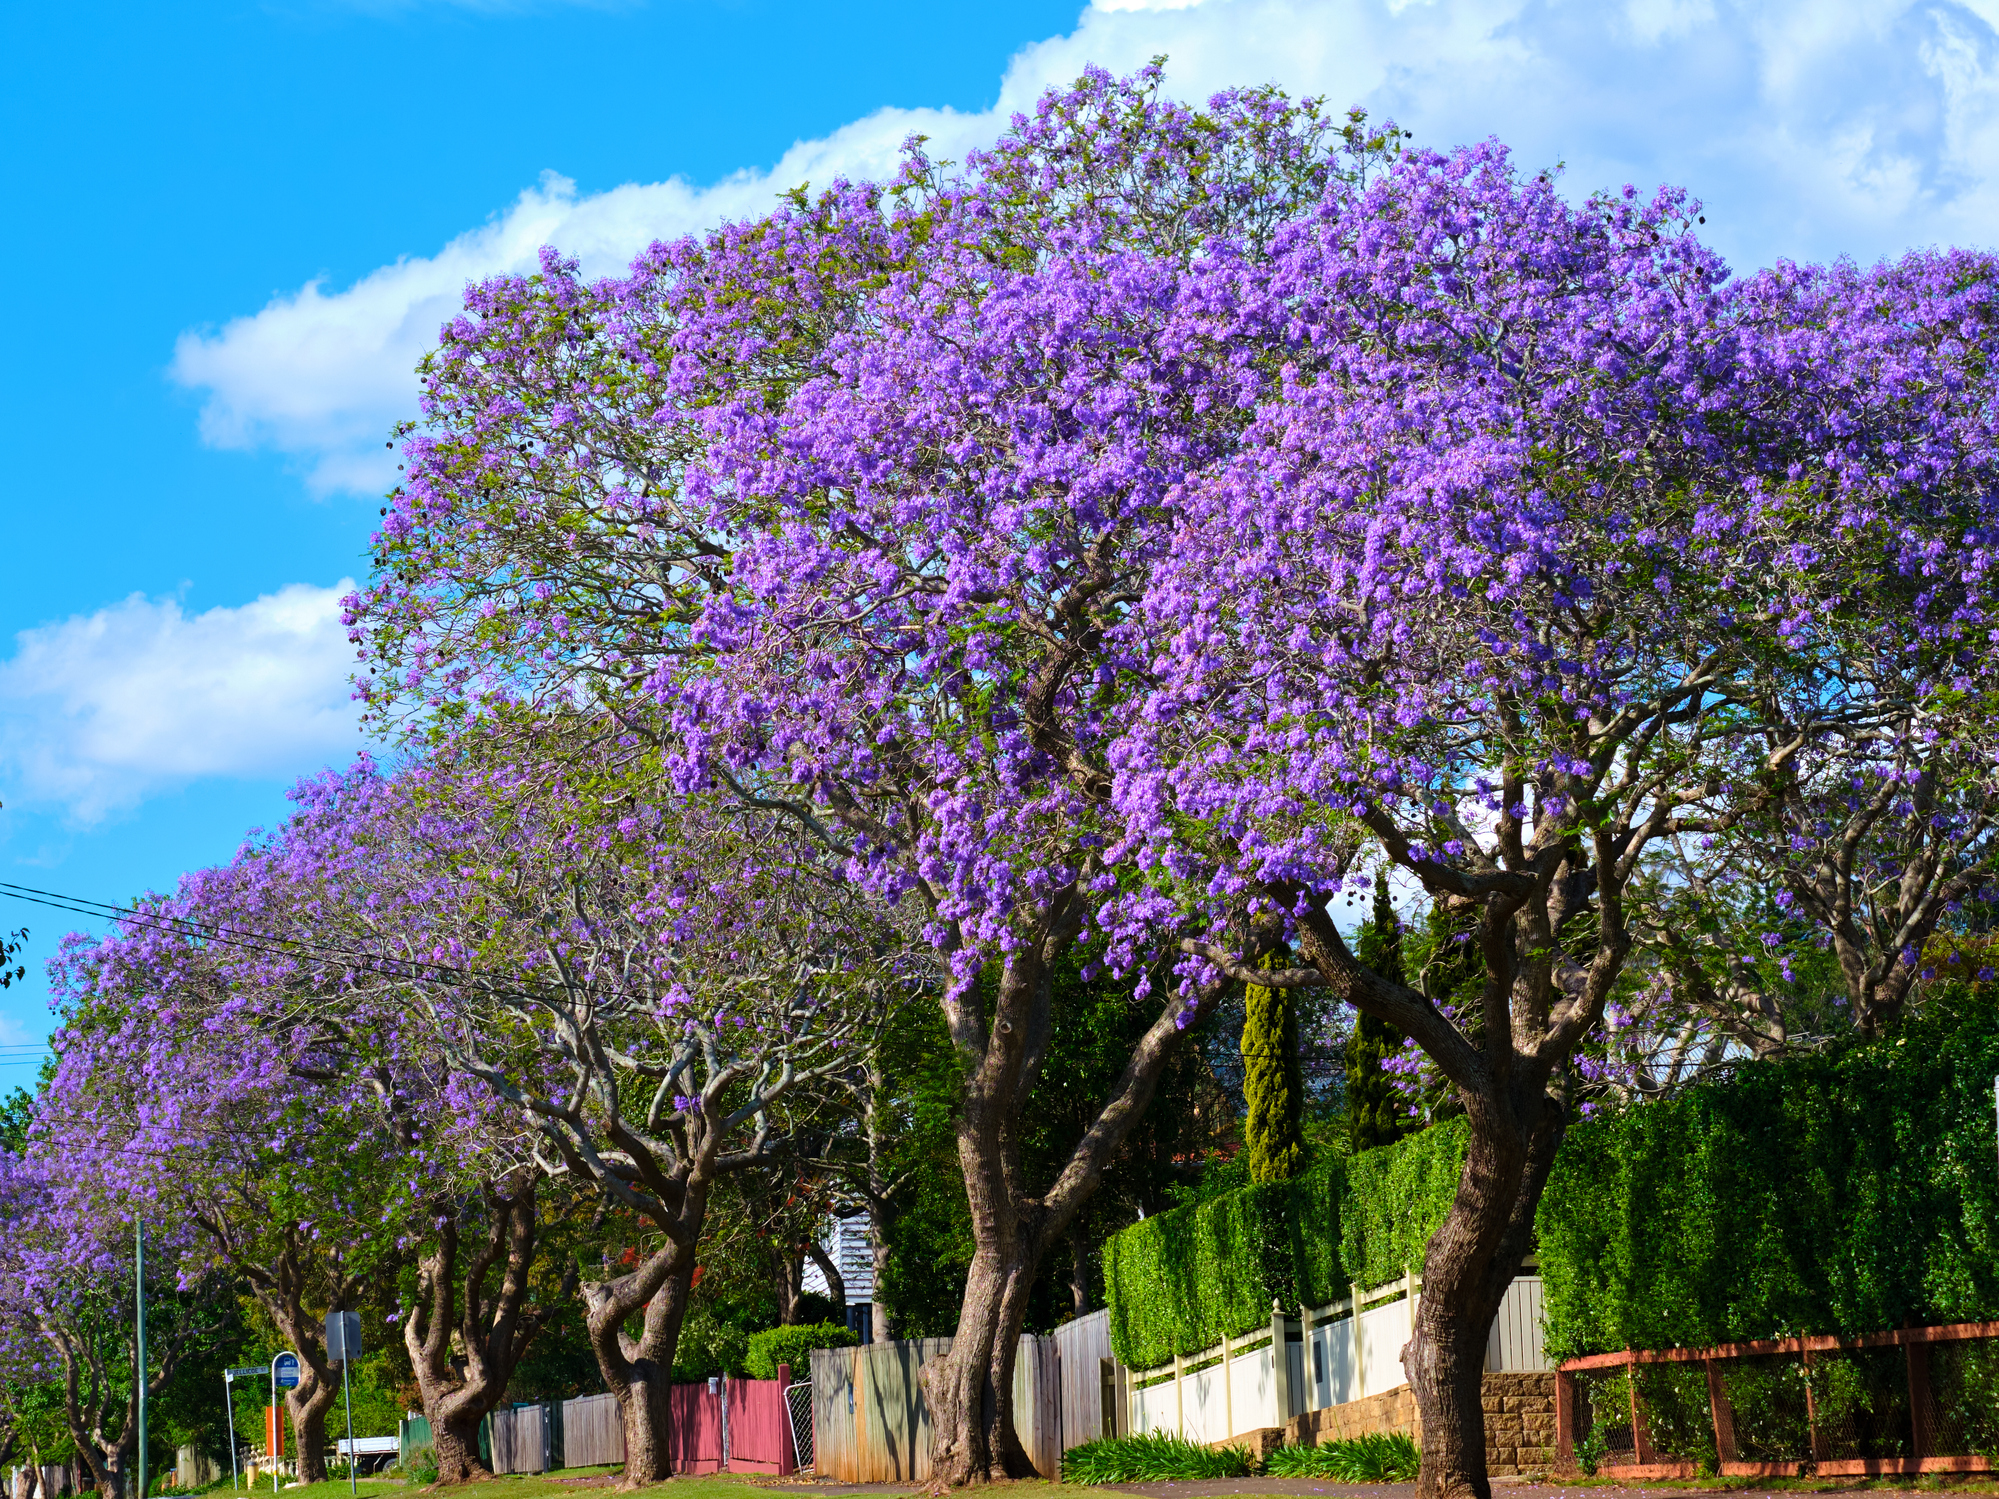 Jacaranda trees